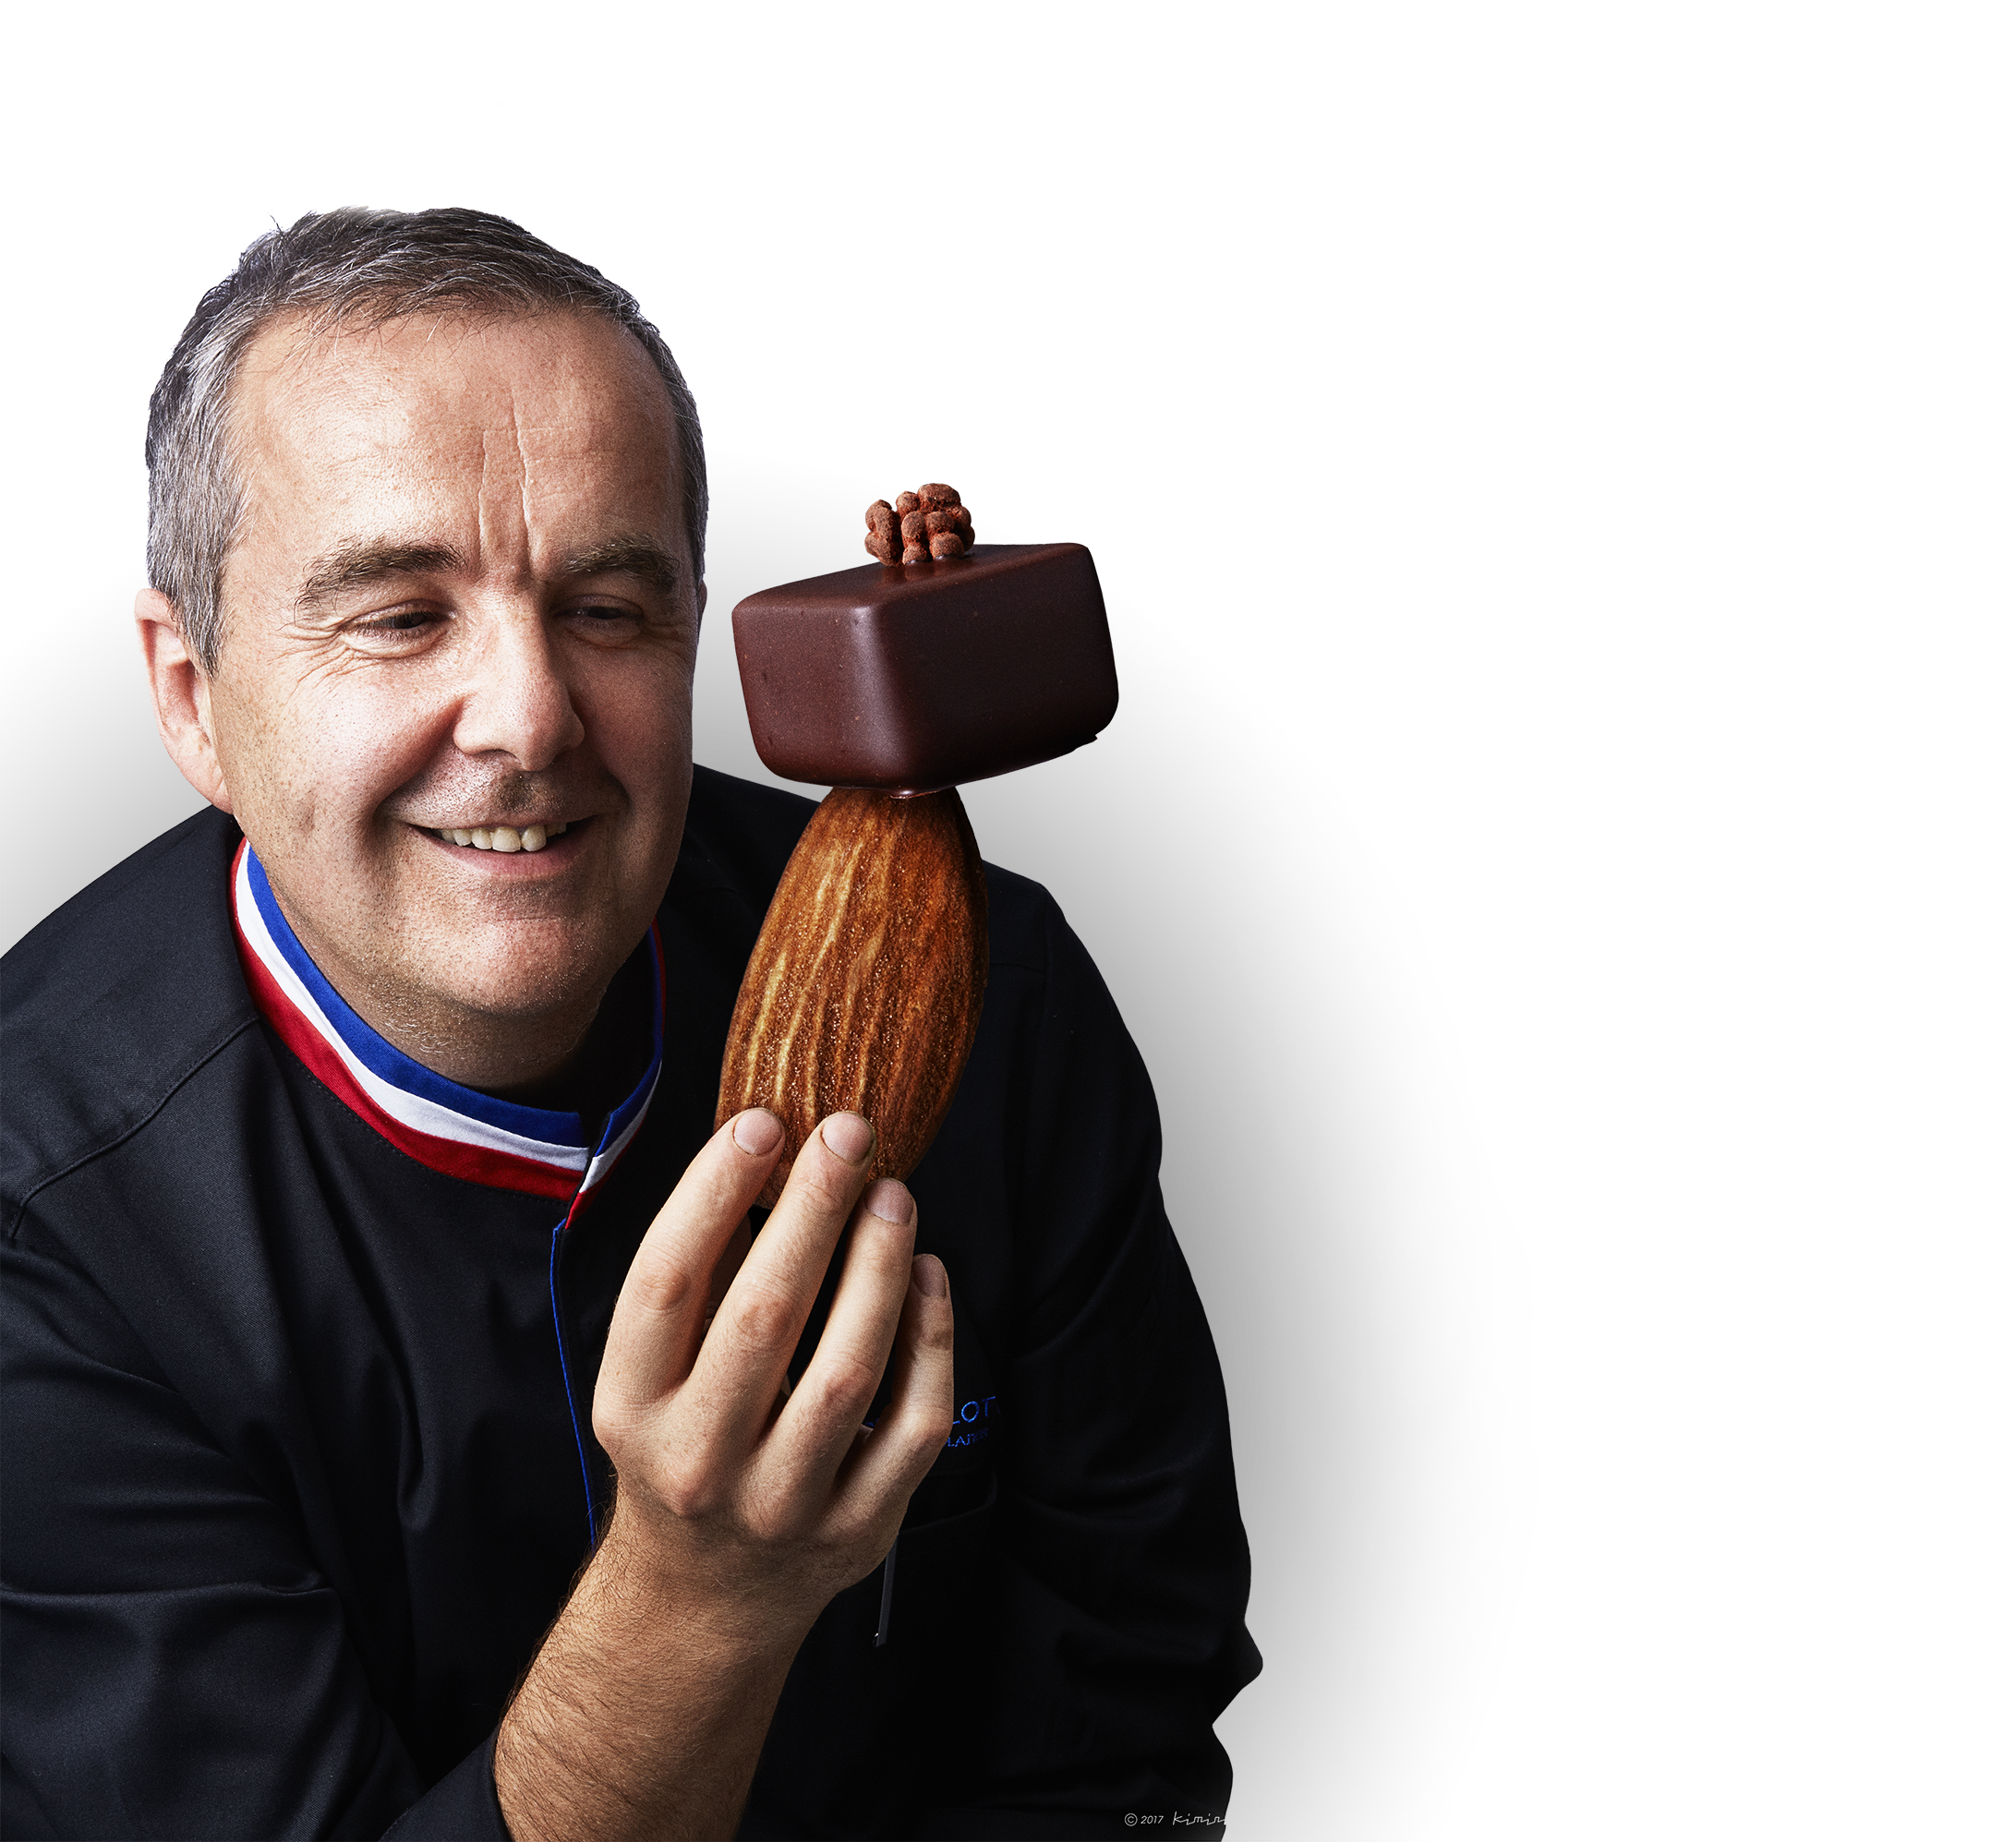 Fabrice Gilotte, Meilleur Ouvrier de France Chocolatier